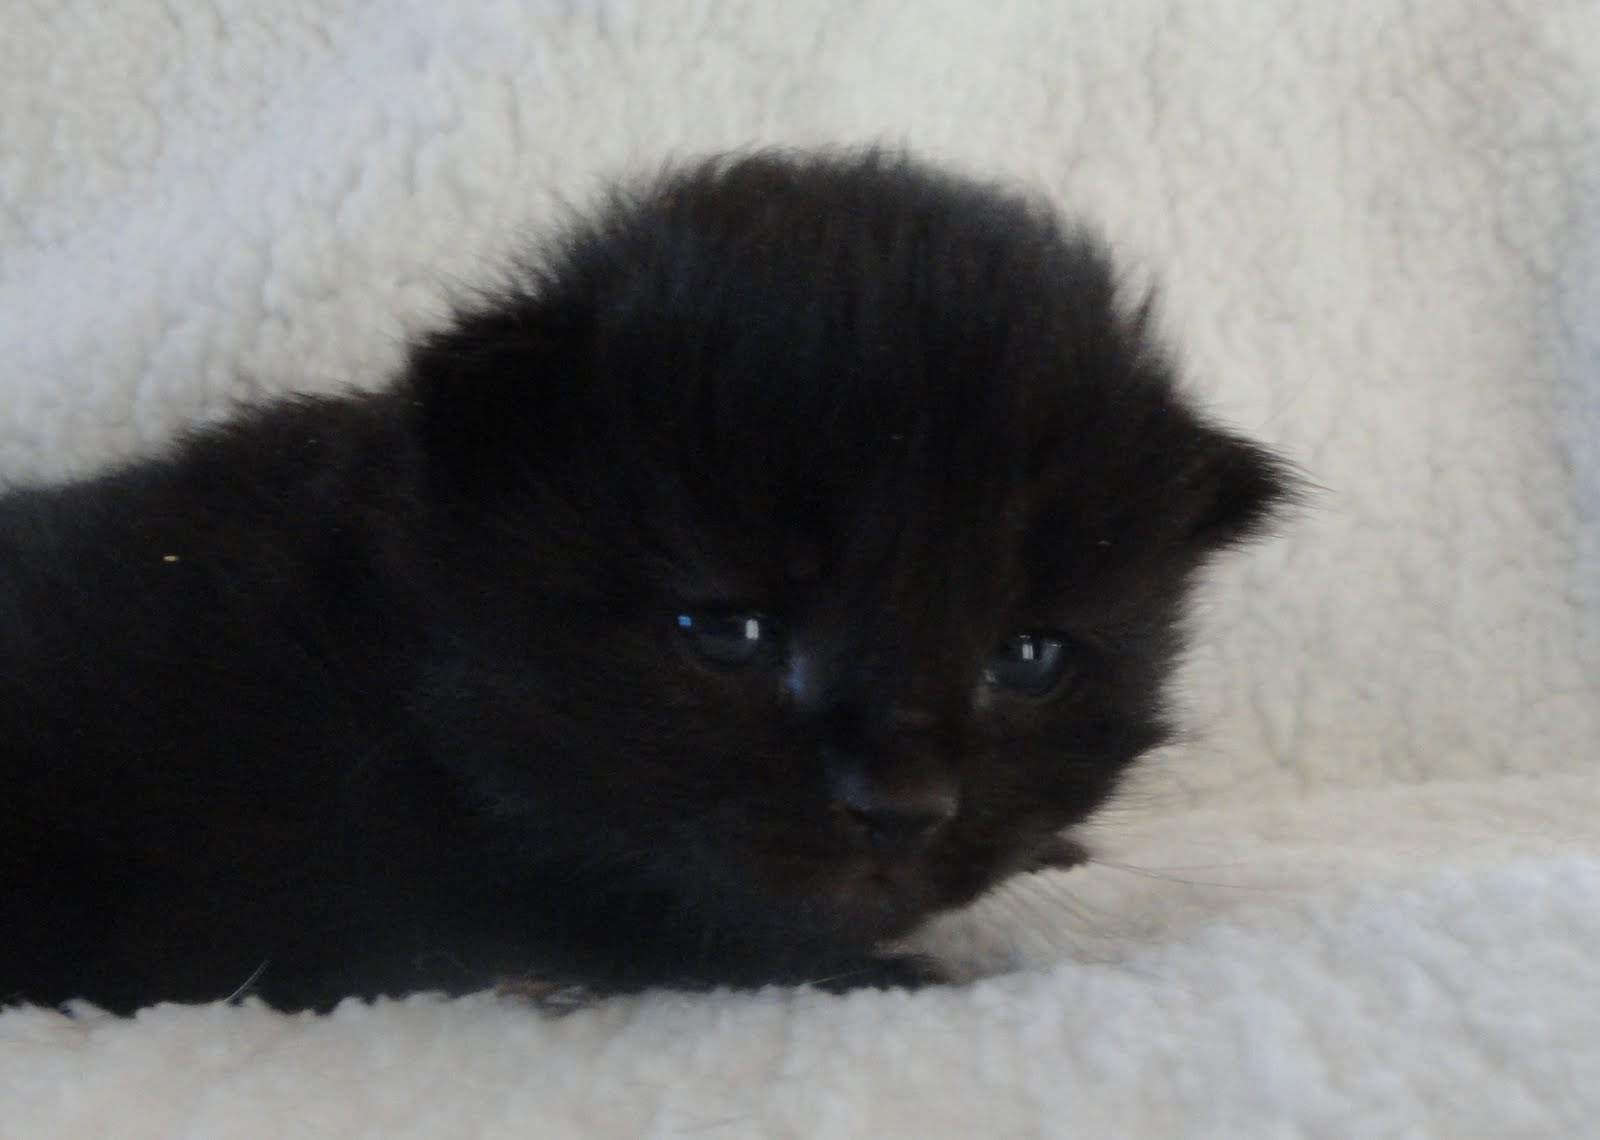 This Kitten So Black!